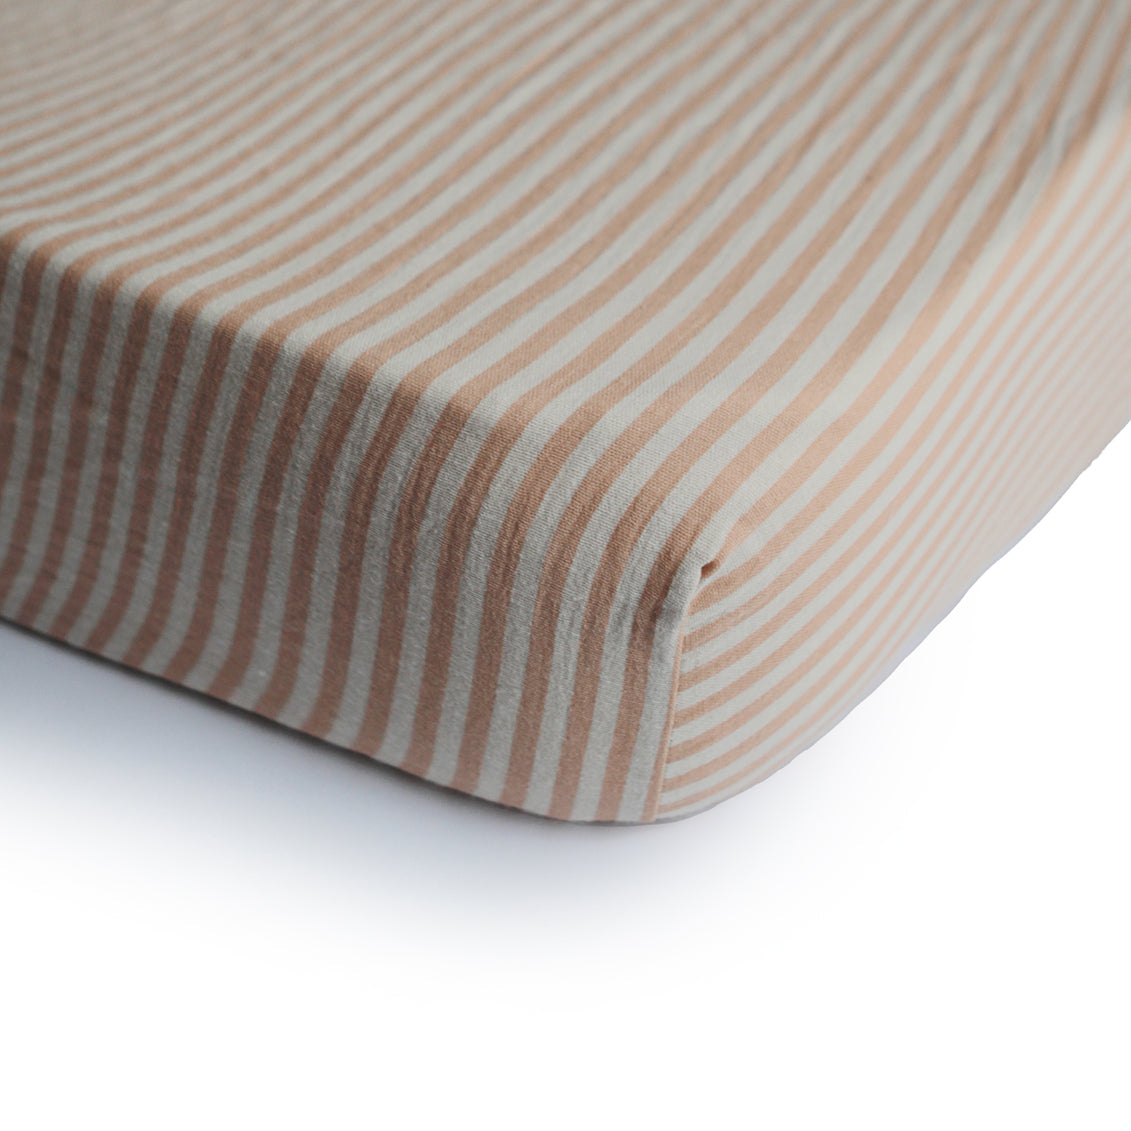 Mushie Cot Sheet - Natural Stripes